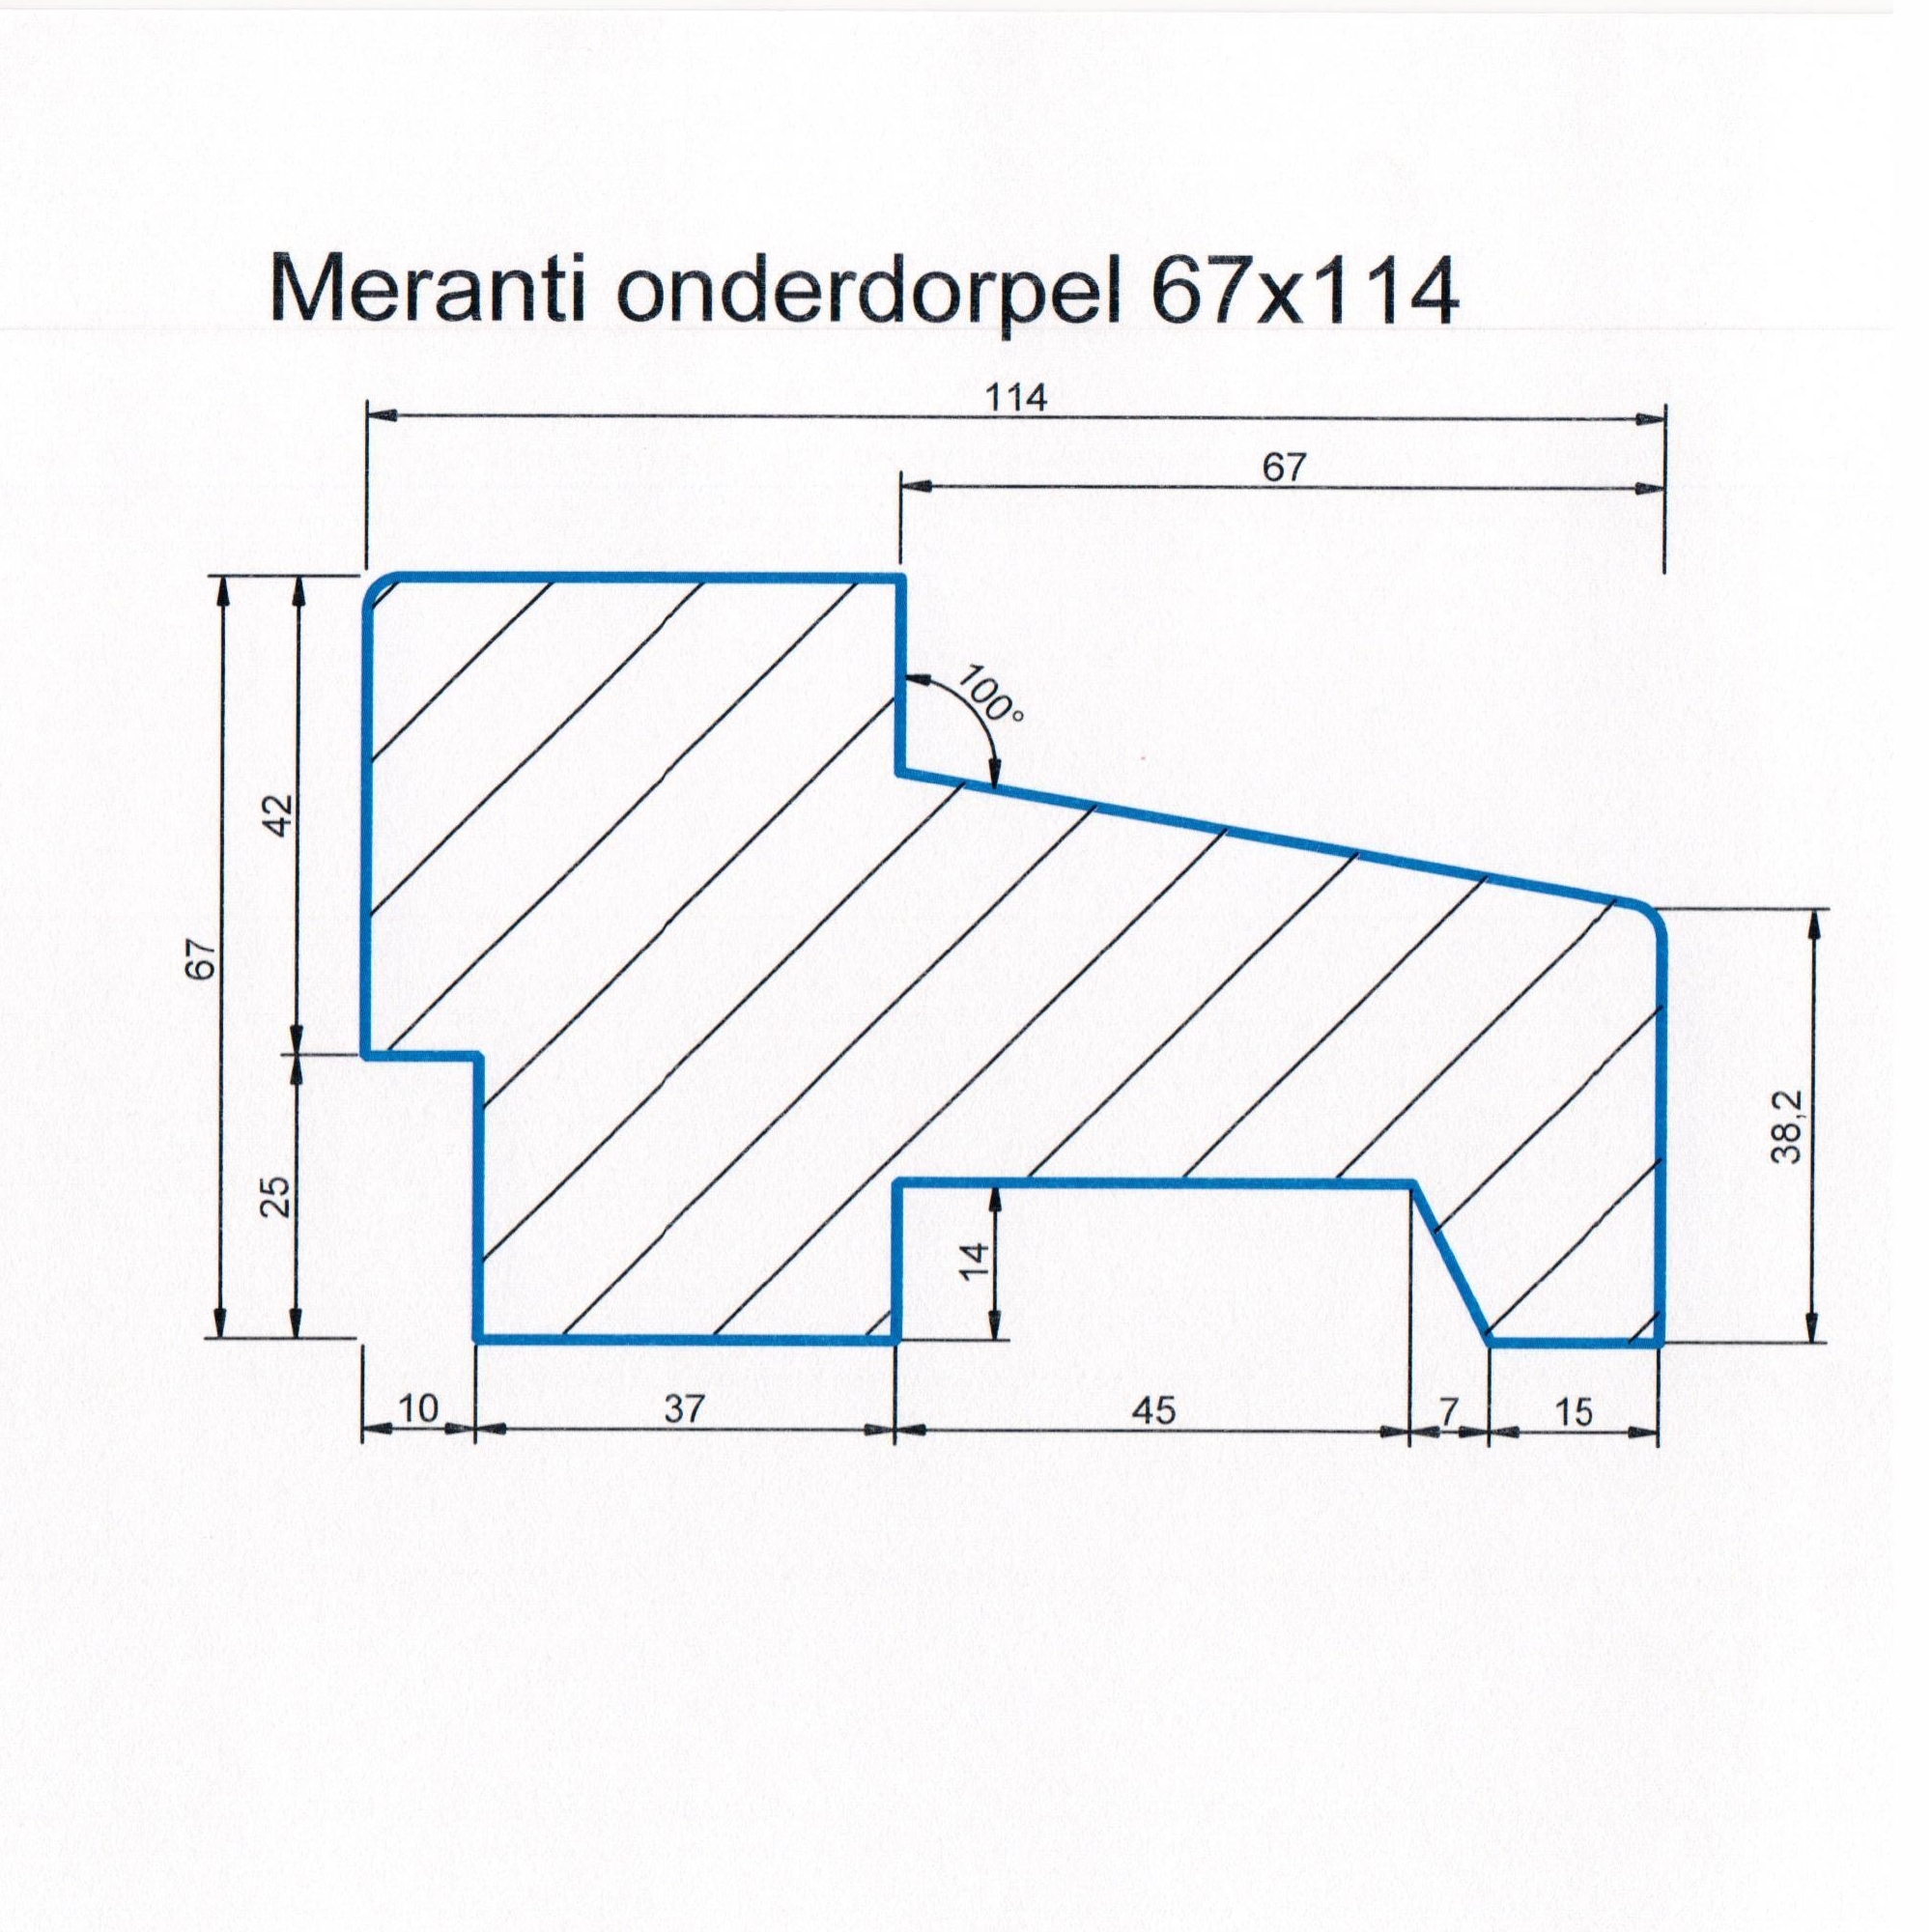 Meranti 67x114 kozijnhout onderdorpel L=1500 mm